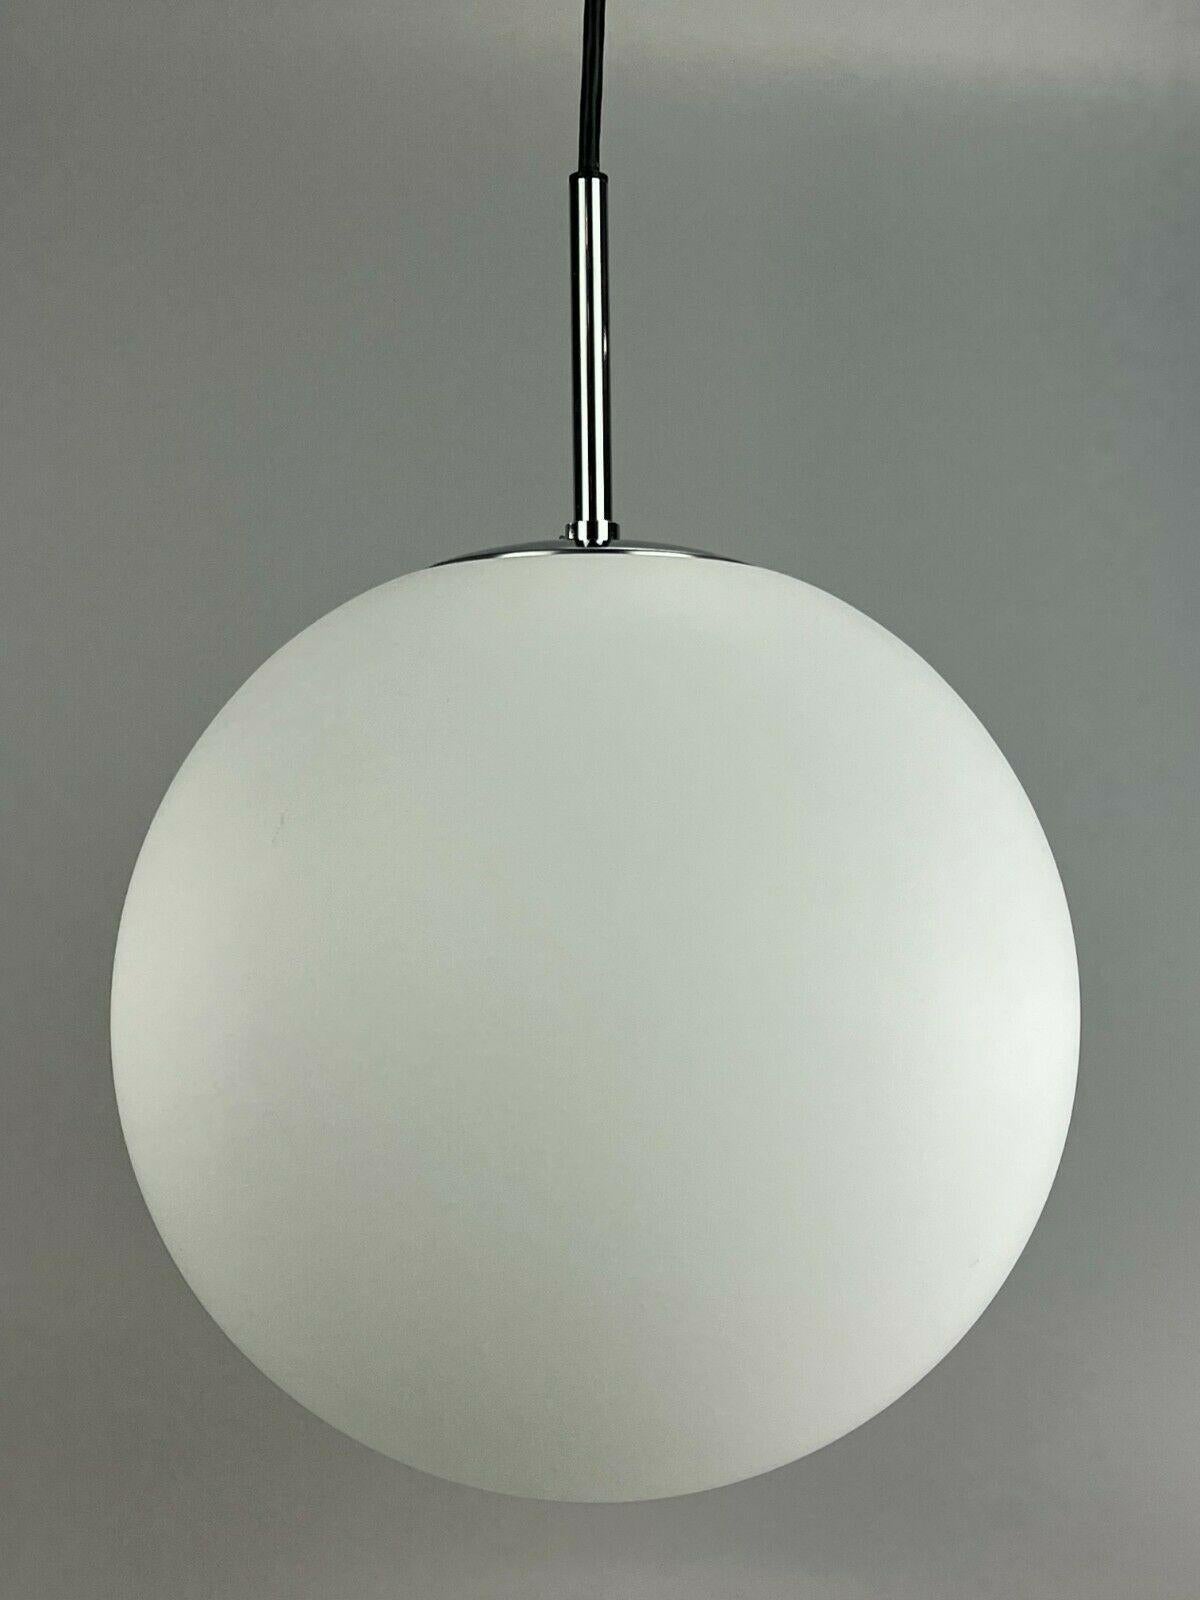 XL 60s 70s Lamp light ceiling lamp Limburg spherical lamp ball design 60s.

Object: ceiling lamp

Manufacturer: Glashütte Limburg Model 